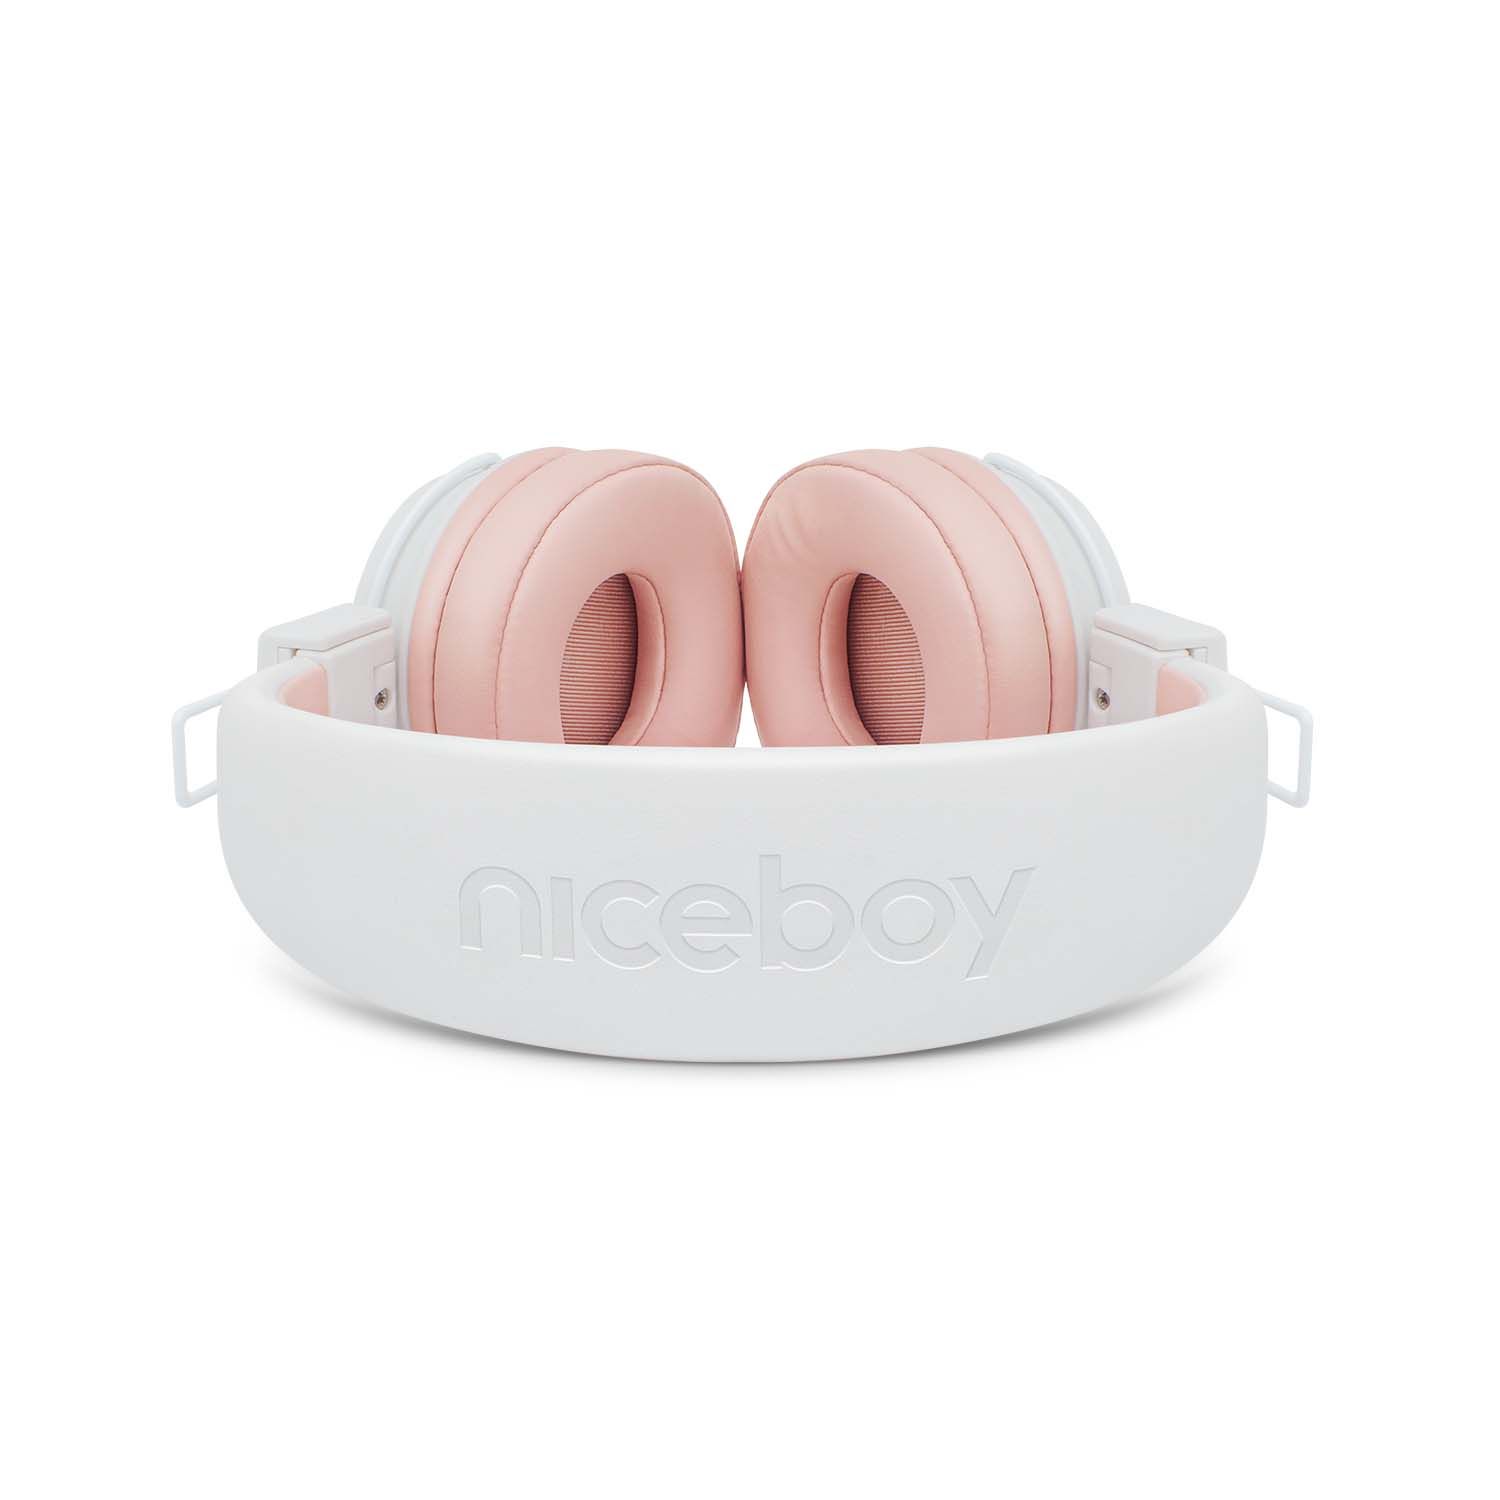 bluetooth přenosná sluchátka niceboy HIVE 2 Joy Sakura extra zvuk maxxbass technologie výdrž 30 h baterie možnost připojení audio kabelu s 3,5mm jackem ultralehký design skládací konstrukce složitelná handsfree mikrofon ovládání na sluchátkách přes uši